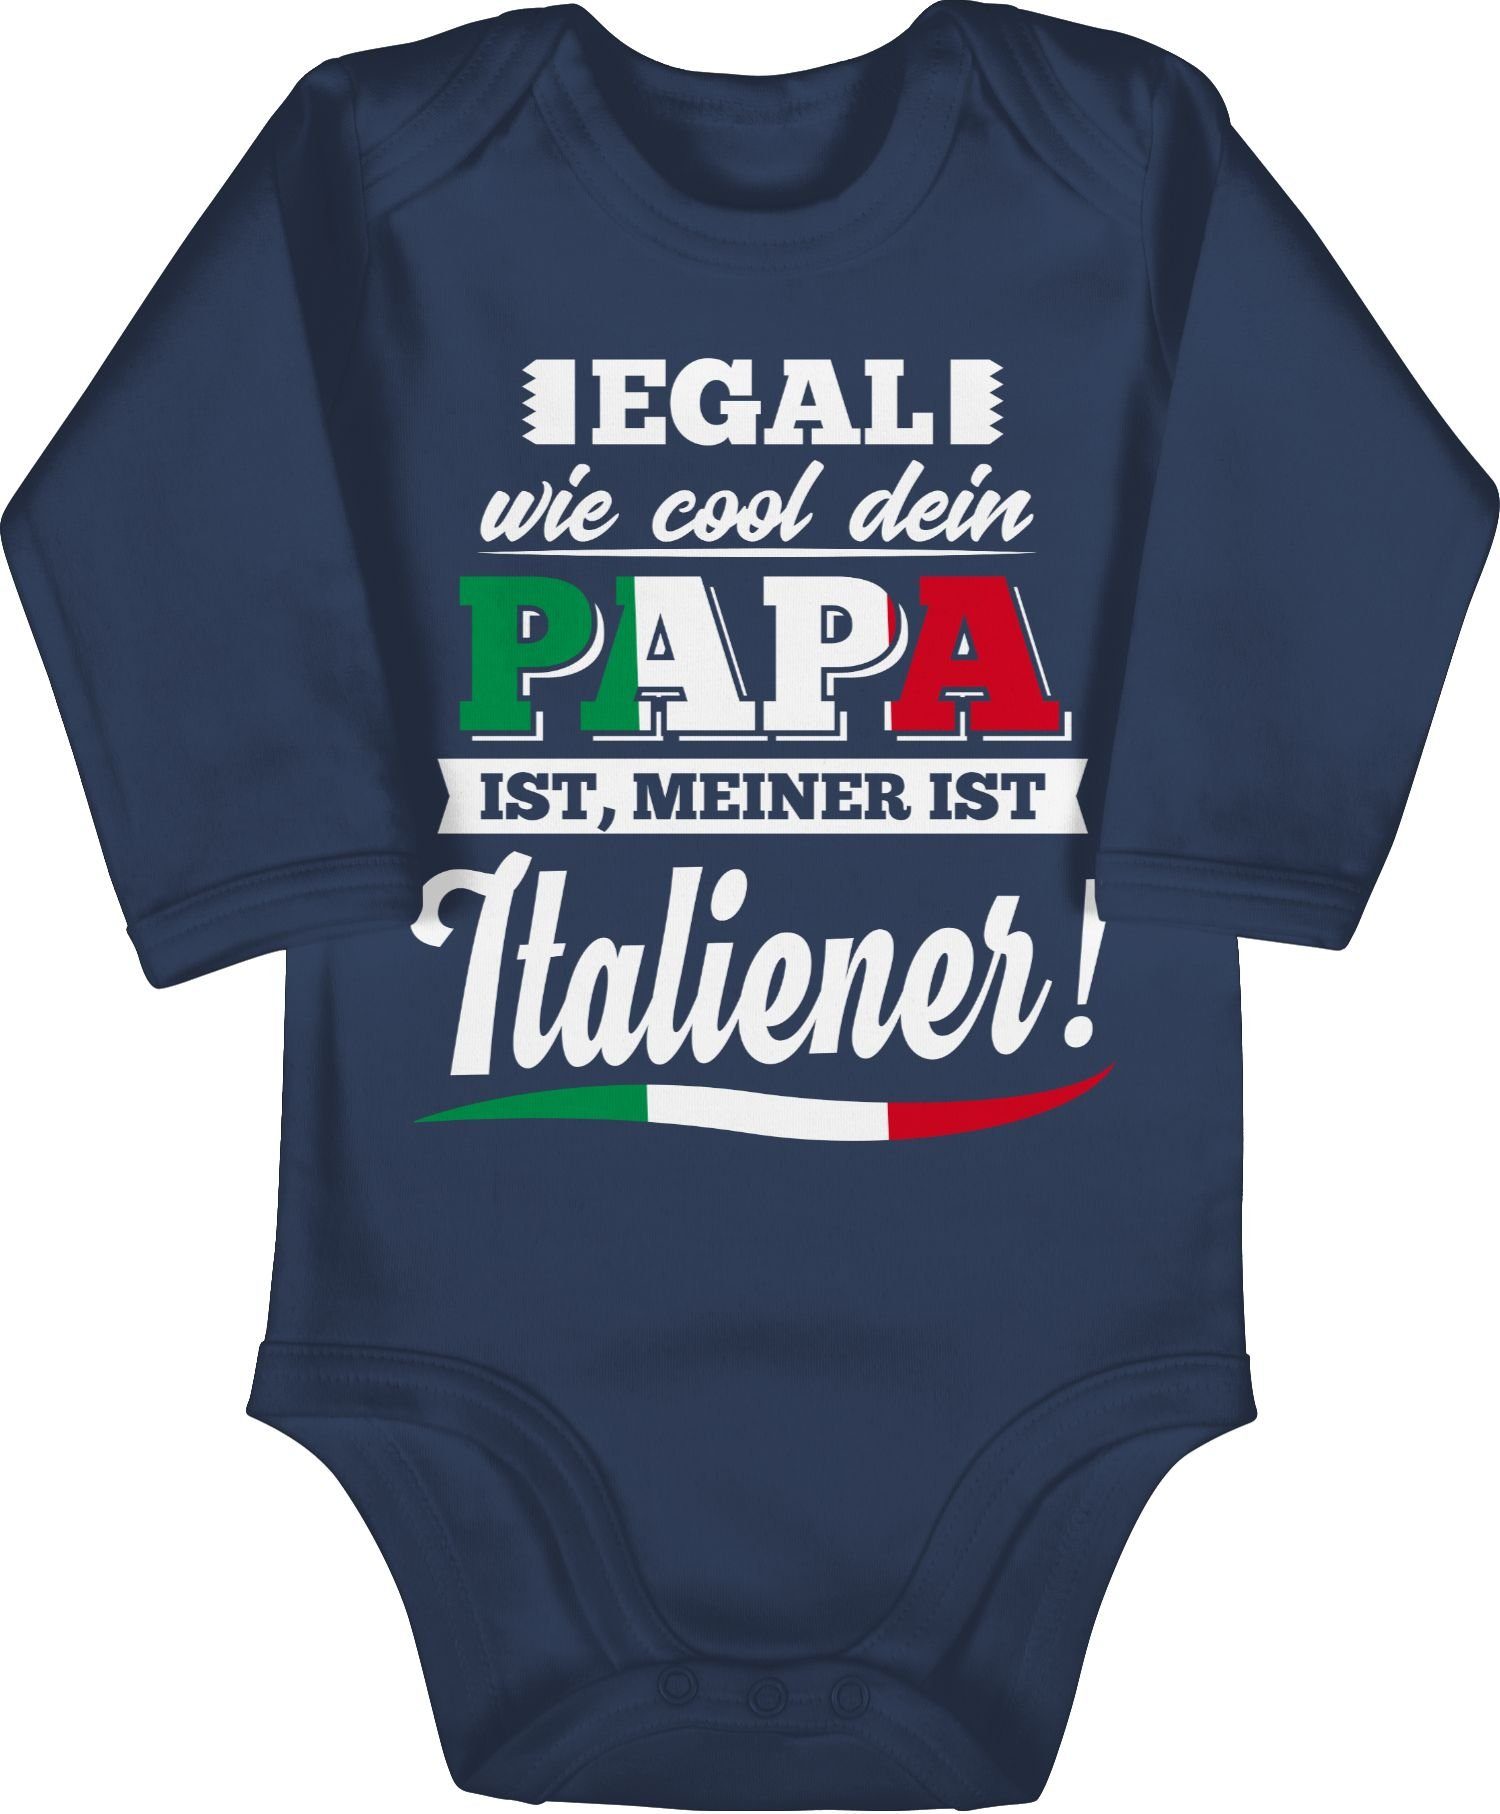 Shirtracer Shirtbody Egal wie Cool dein Papa meiner ist Italiener Sprüche Baby 2 Navy Blau